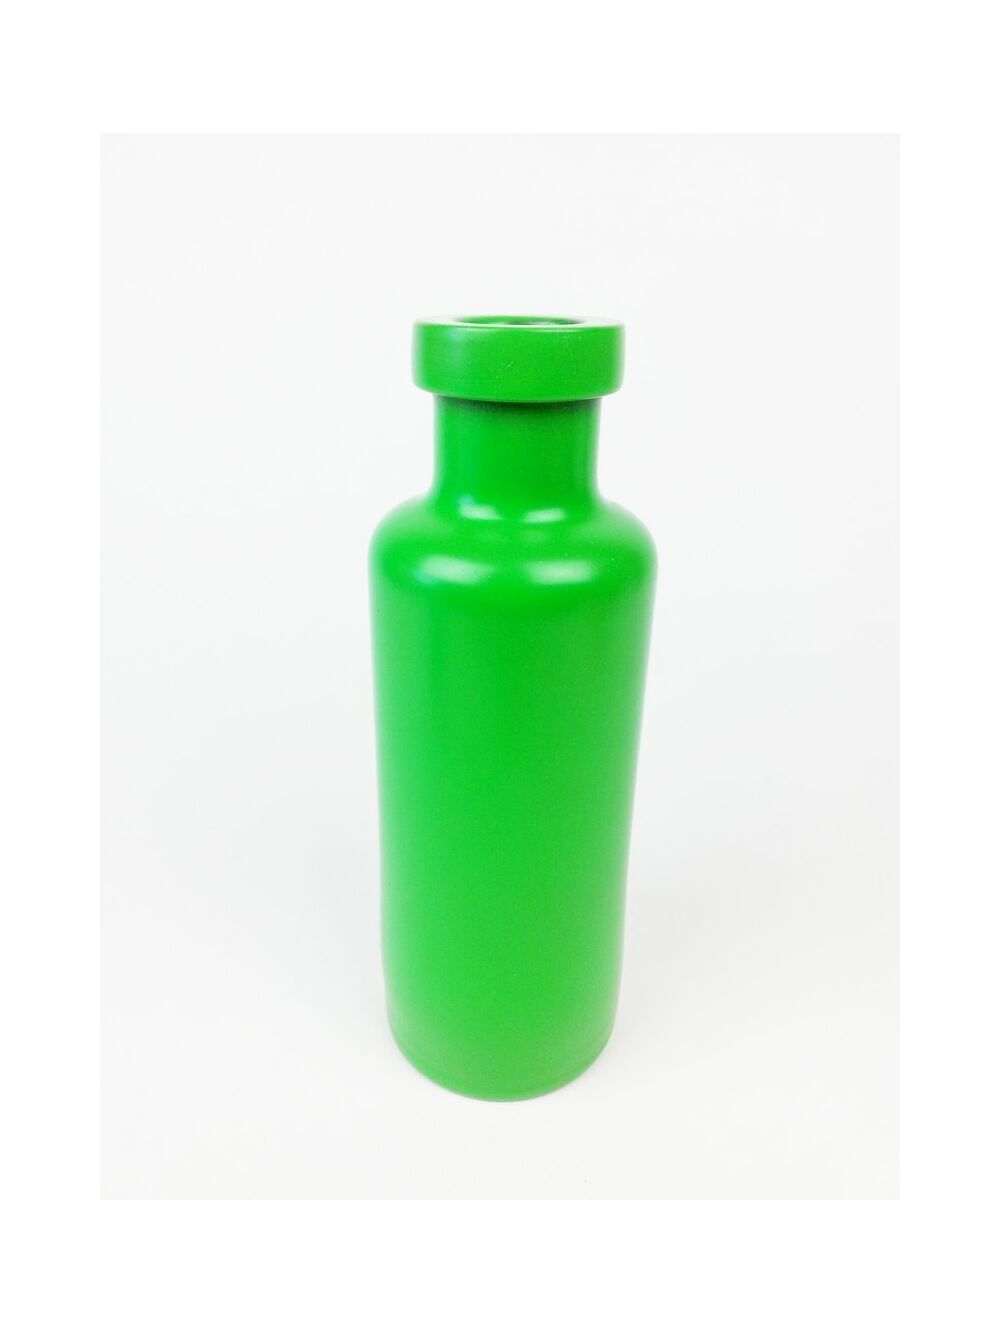 Üveg palack nagy színes - Zöld